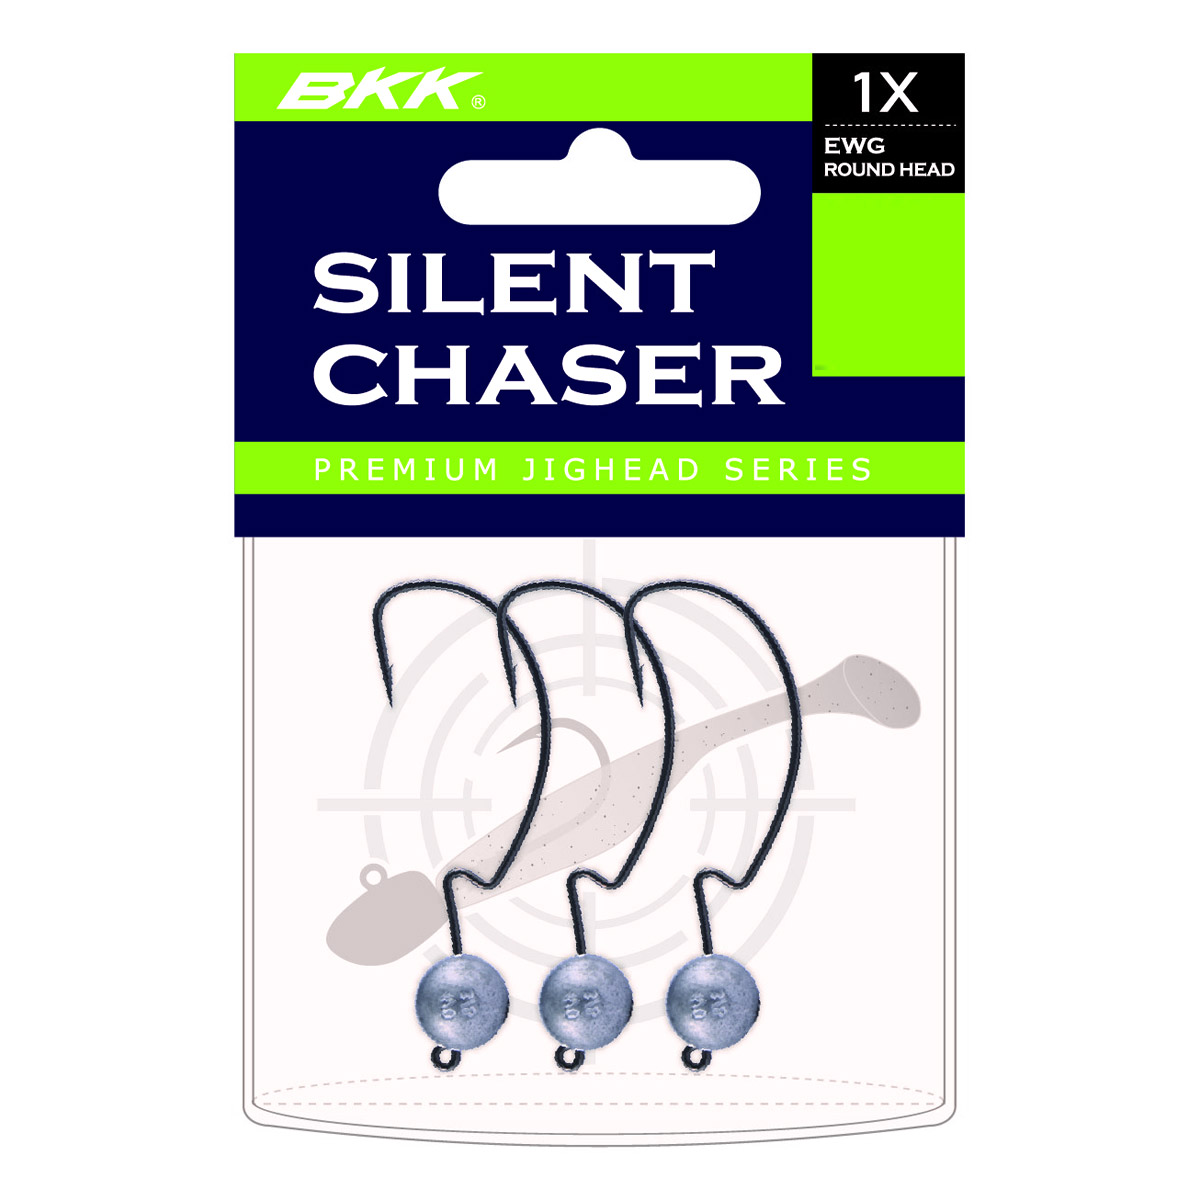 BKK Silent Chaser EWG 1X Round Head Size 3/0